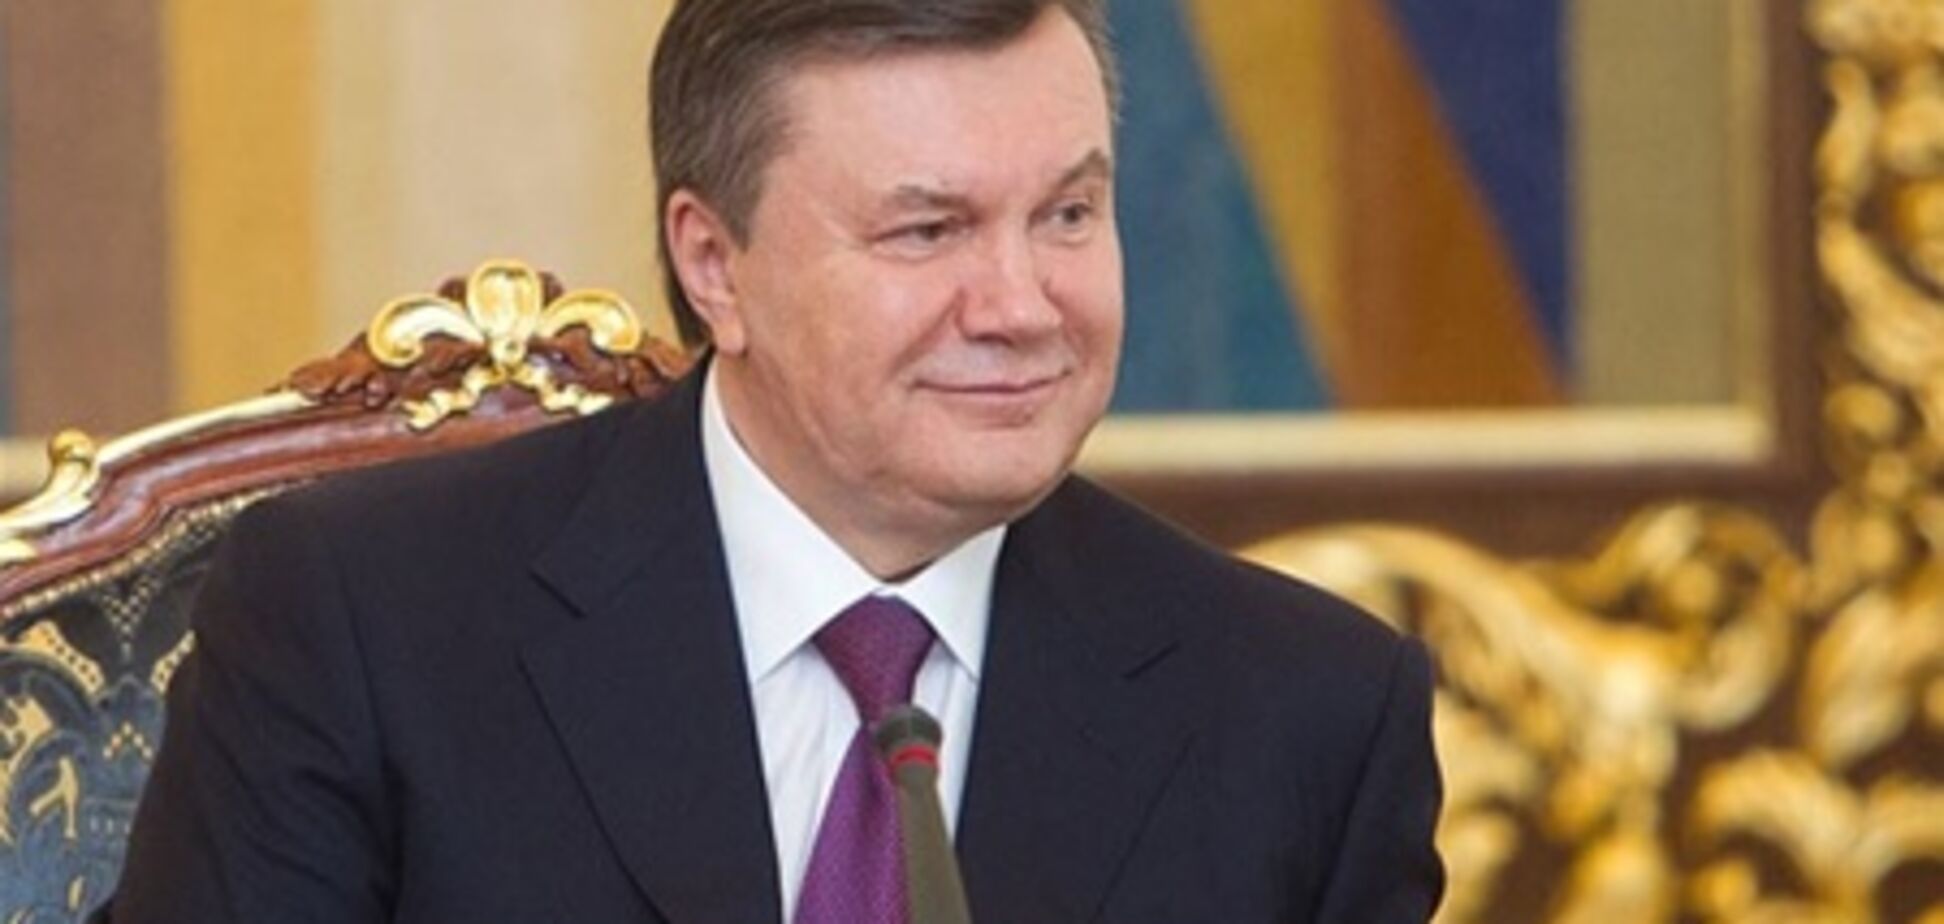 Янукович пожелал женщинам радостной весны. Видео